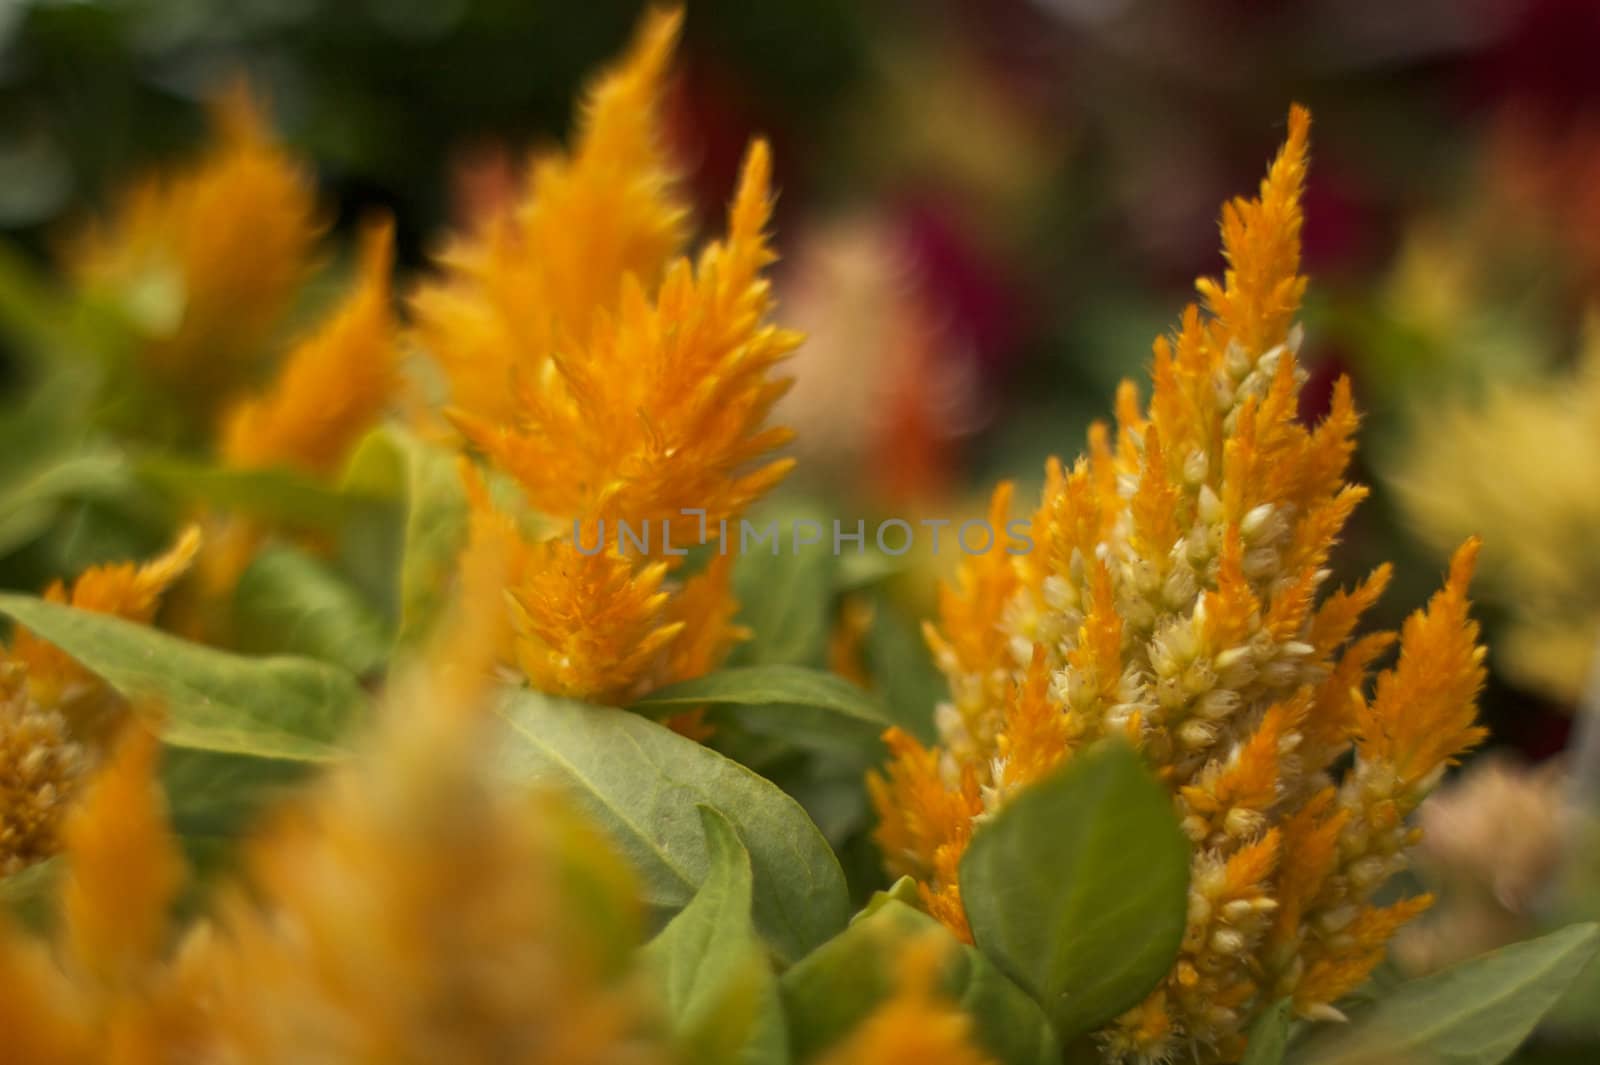 Golden Fern like flowers by bobkeenan